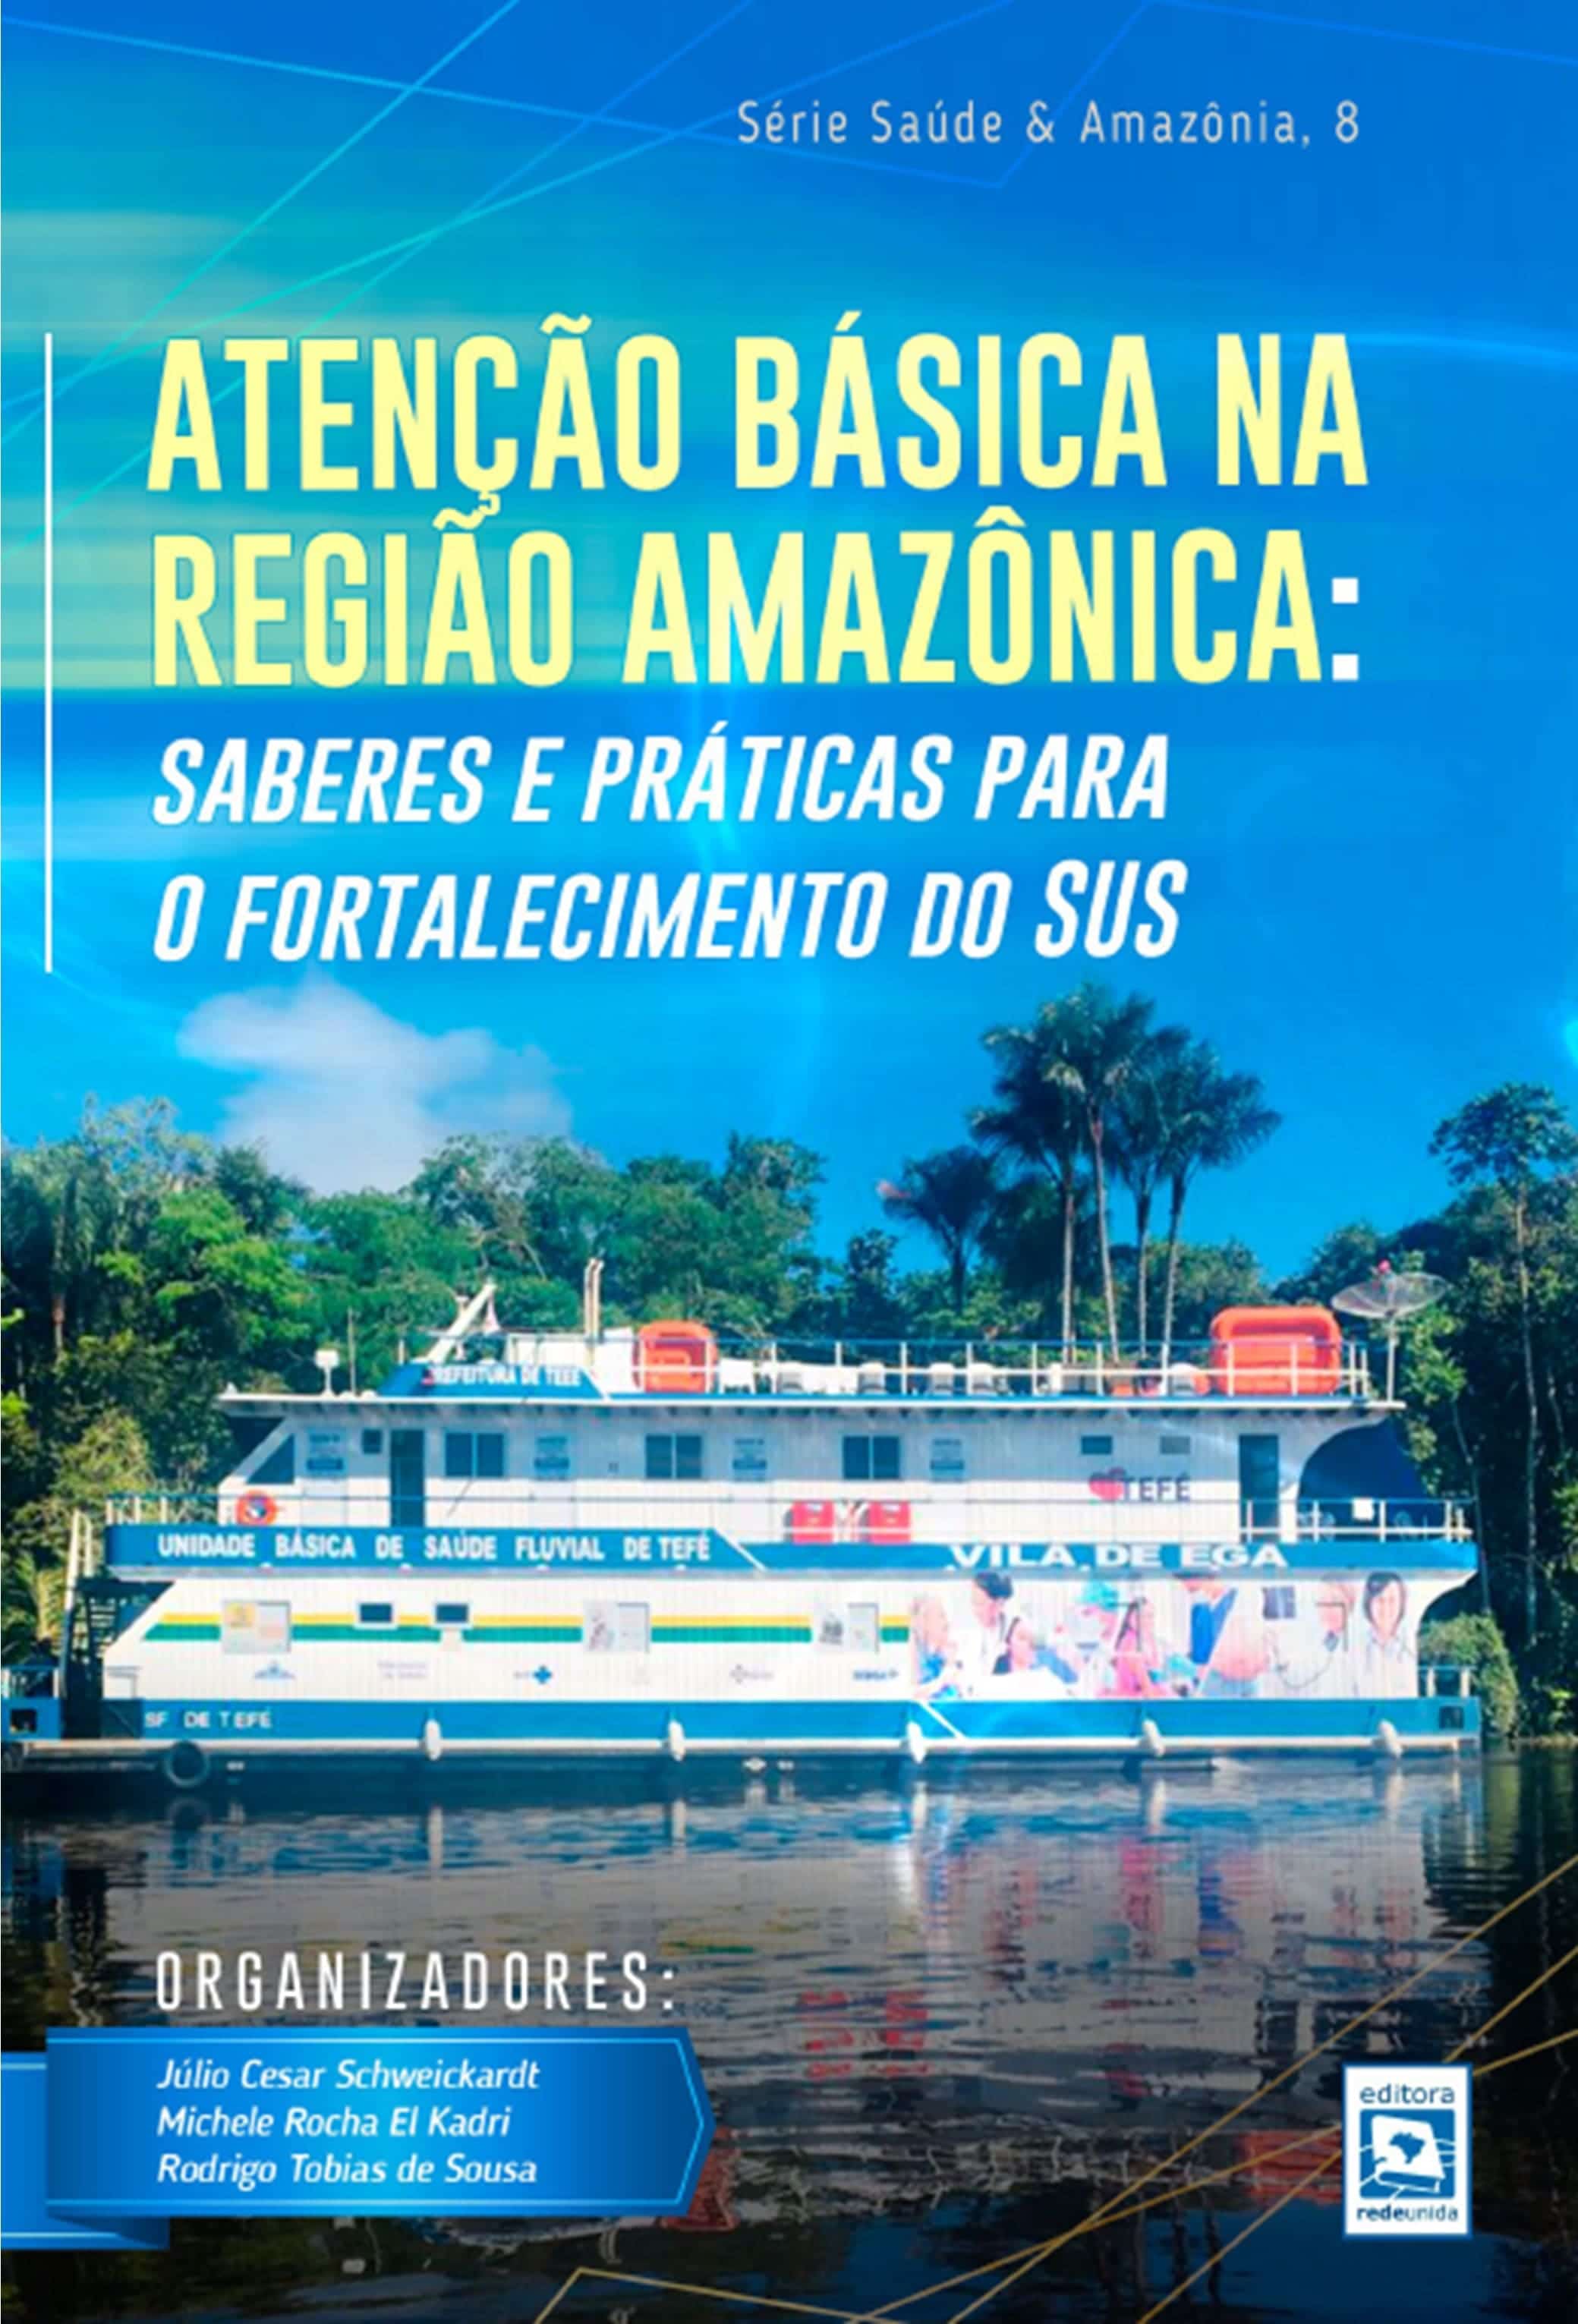 Atenção Básica na Região Amazônica:saberes e práticas para o fortalecimento do SUS